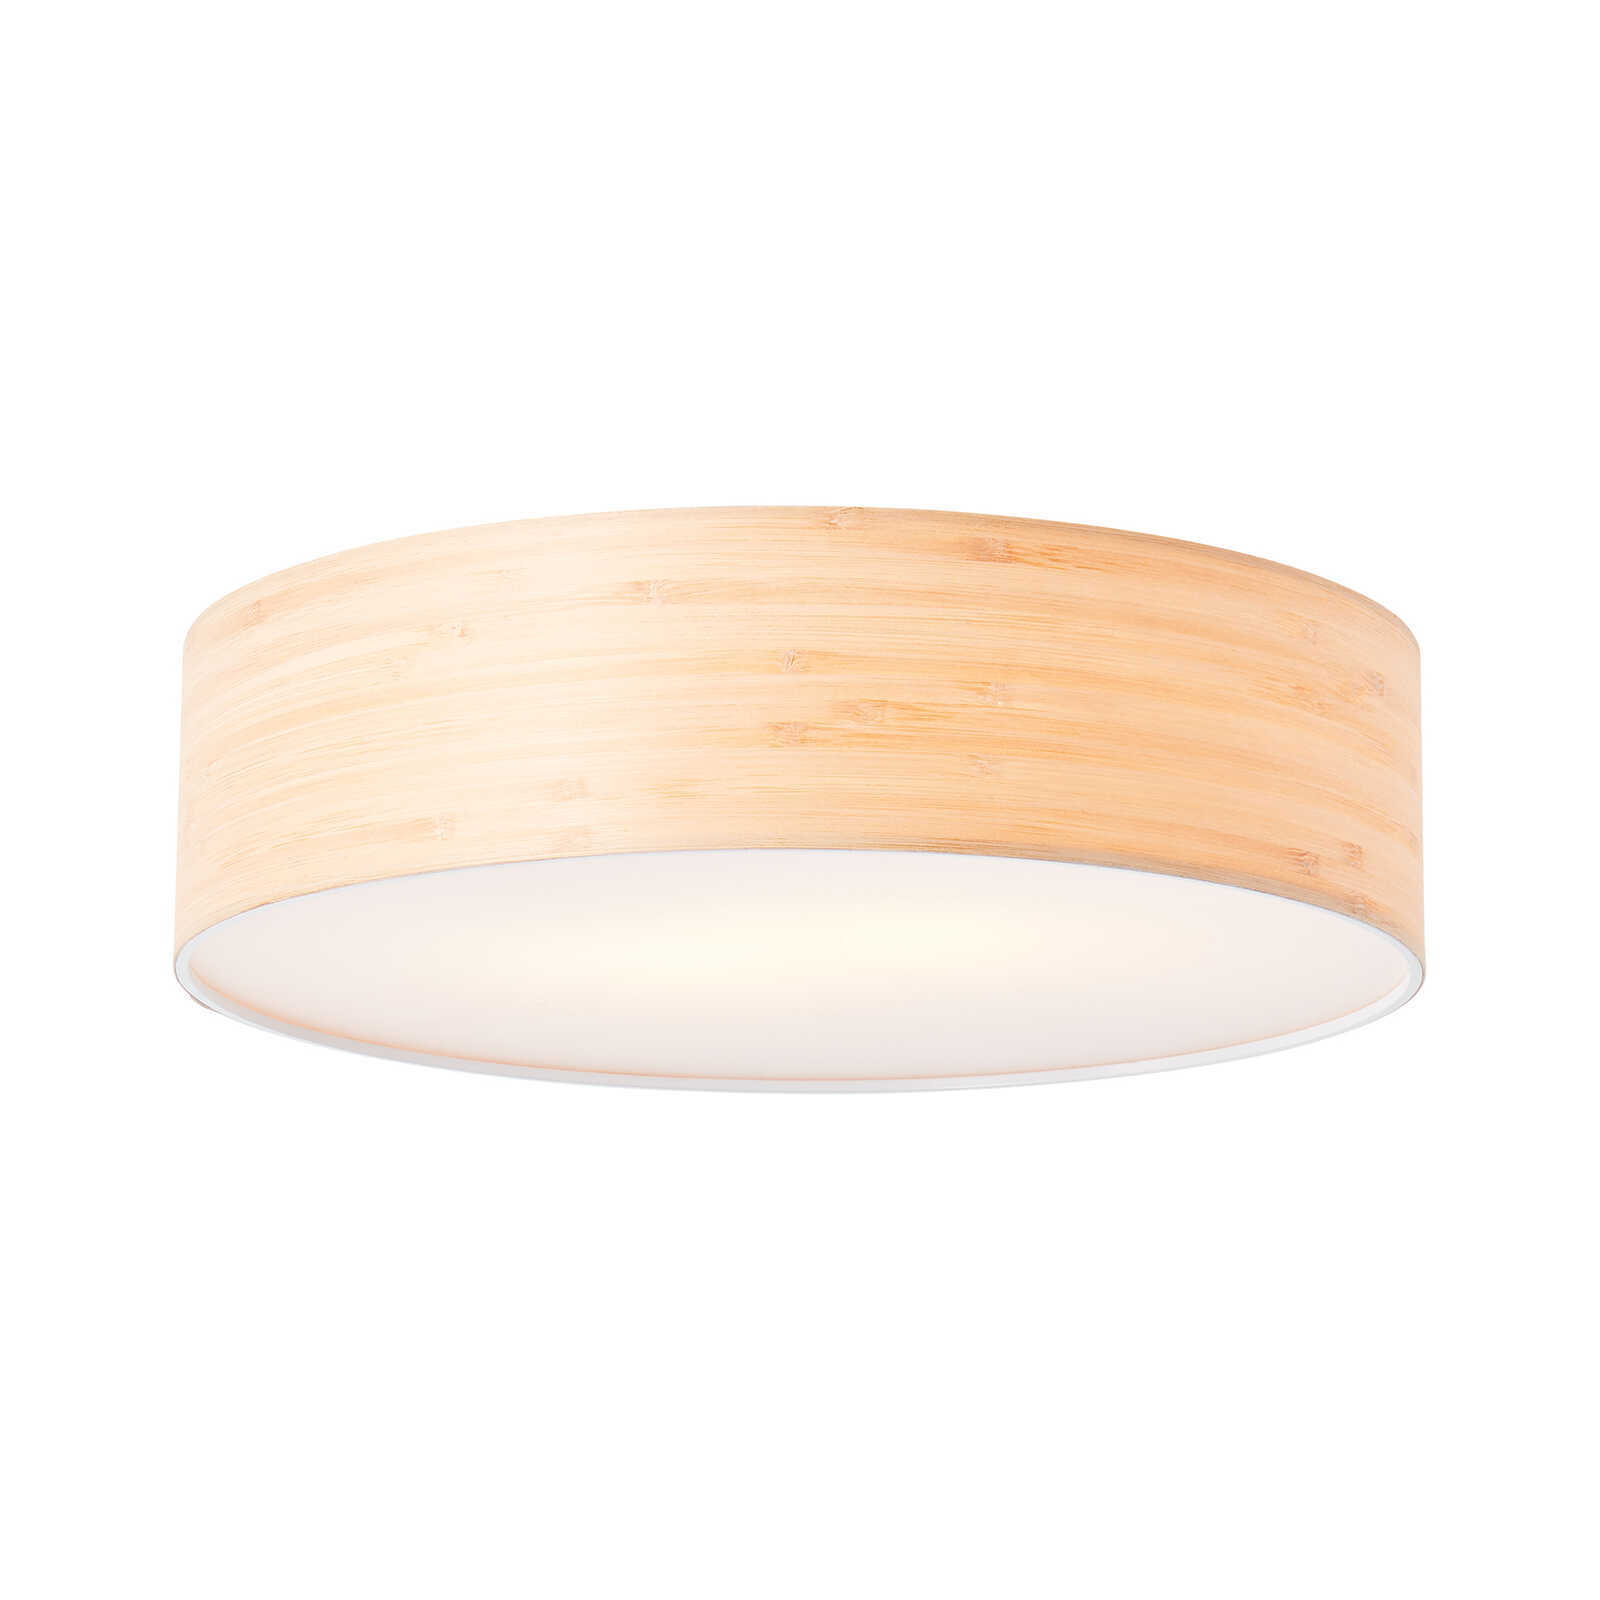 Houten plafondlamp - Michael 1 - Bruin
